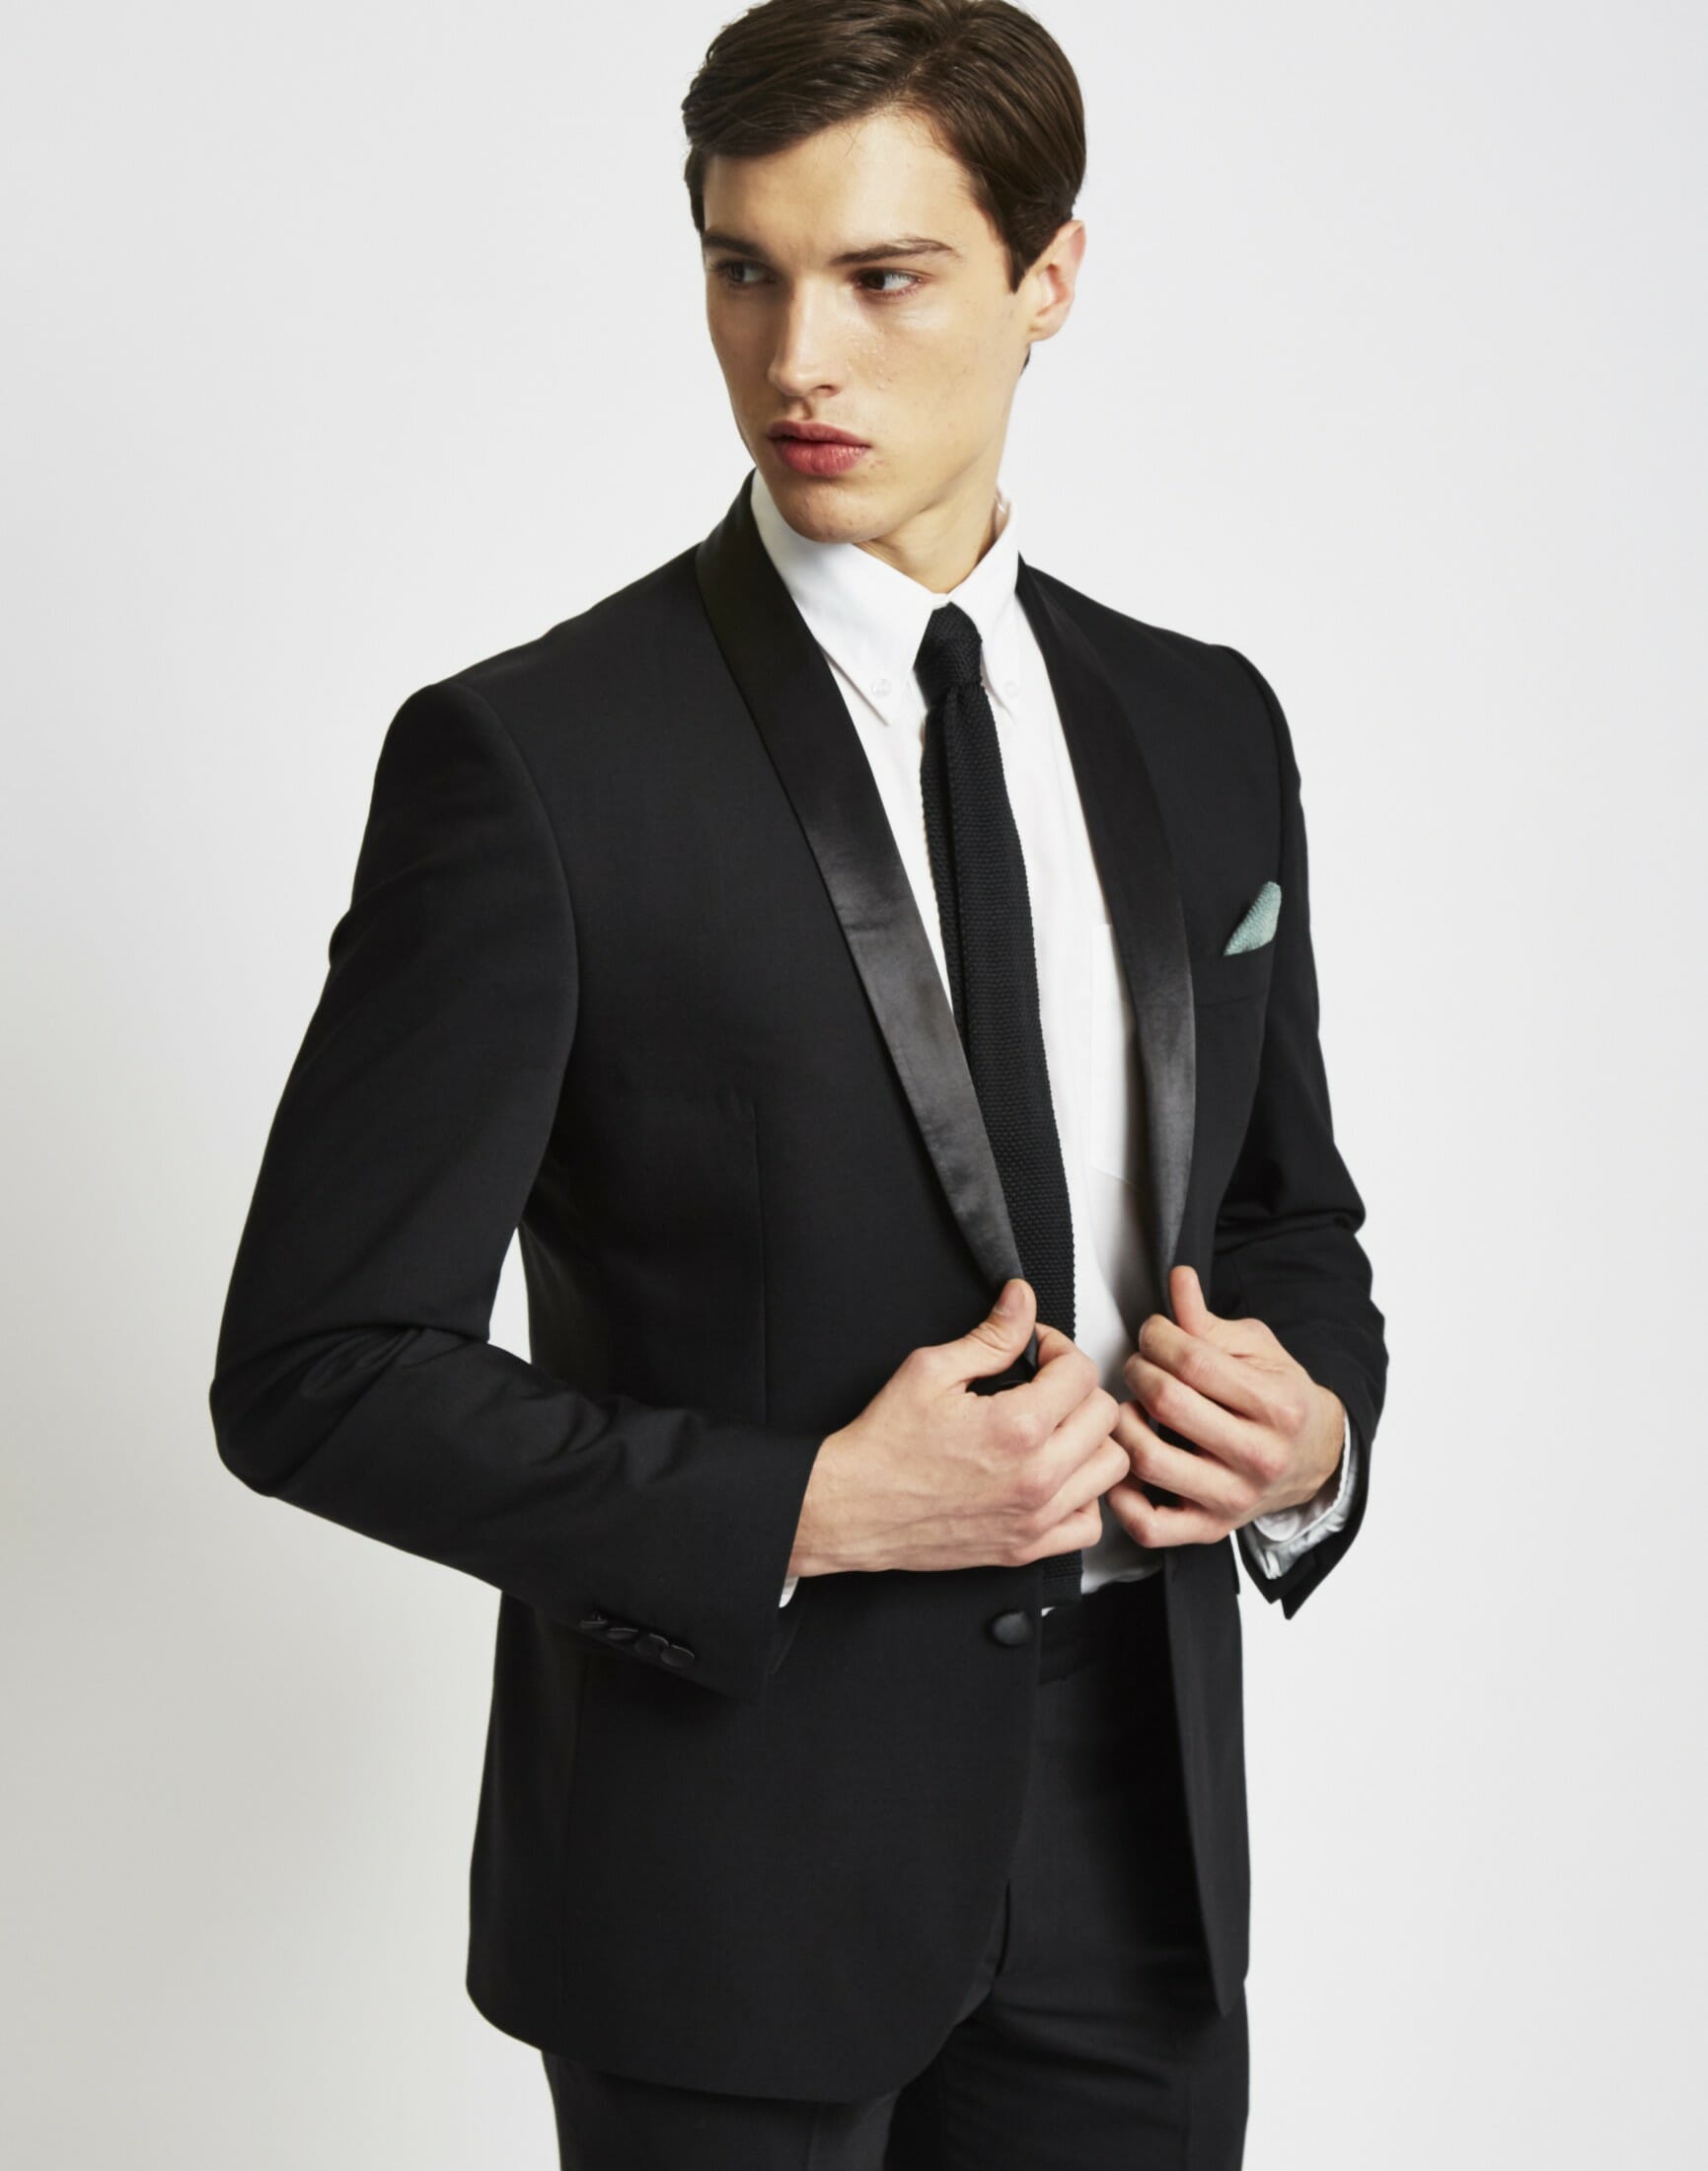 Trendy Tuxedo with Long Tie